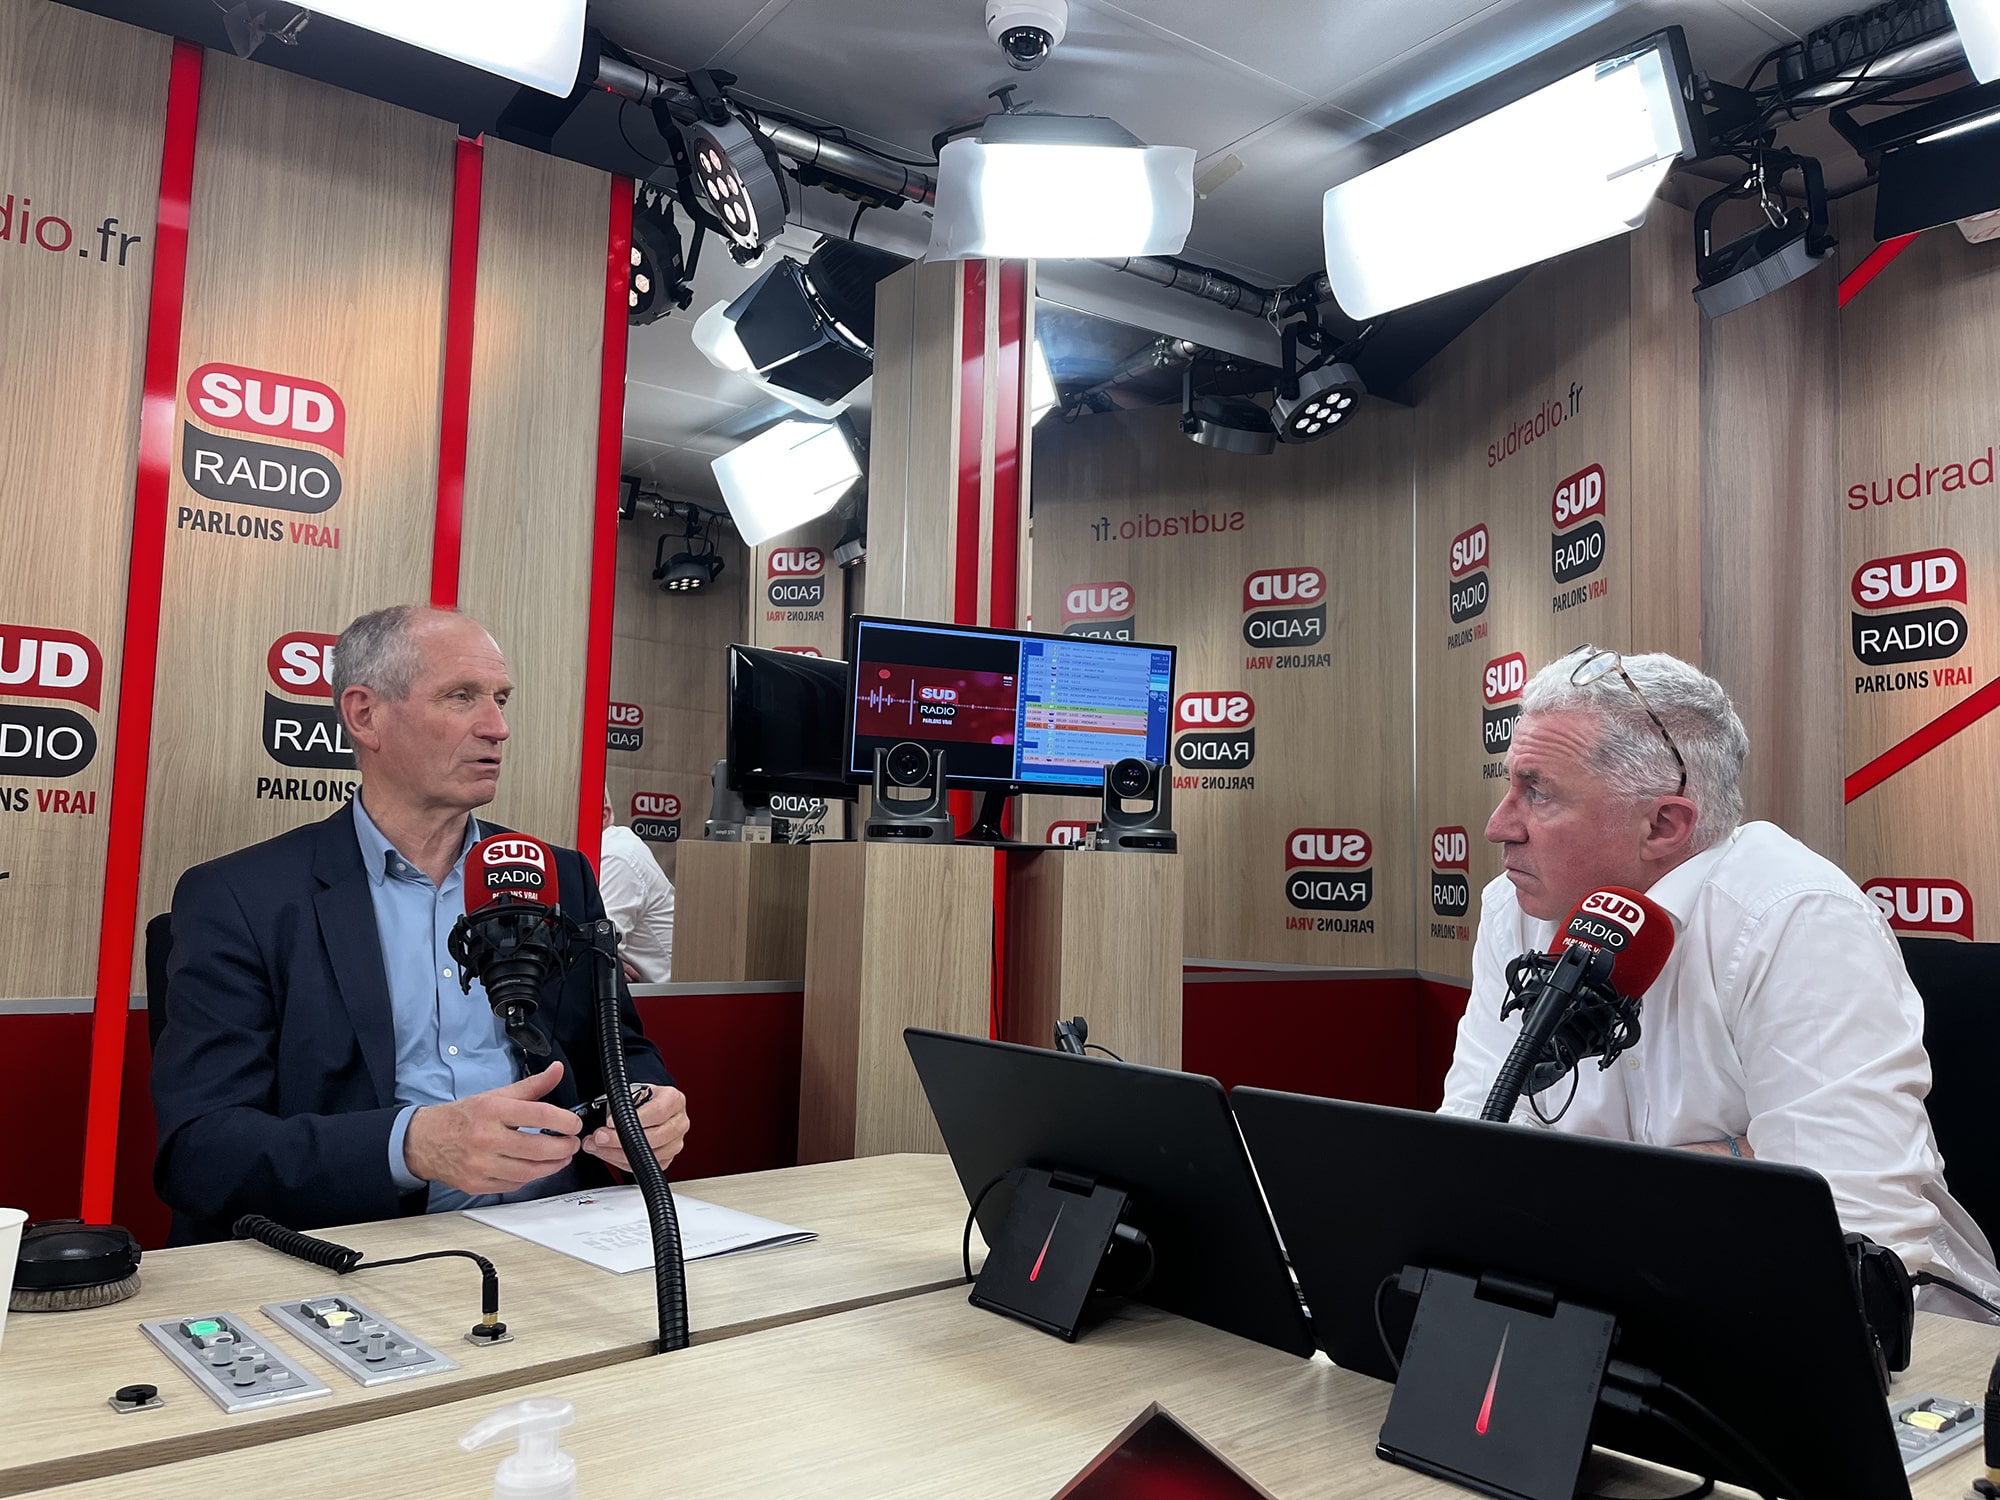 Pierre Soujol interviewé par Sud Radio